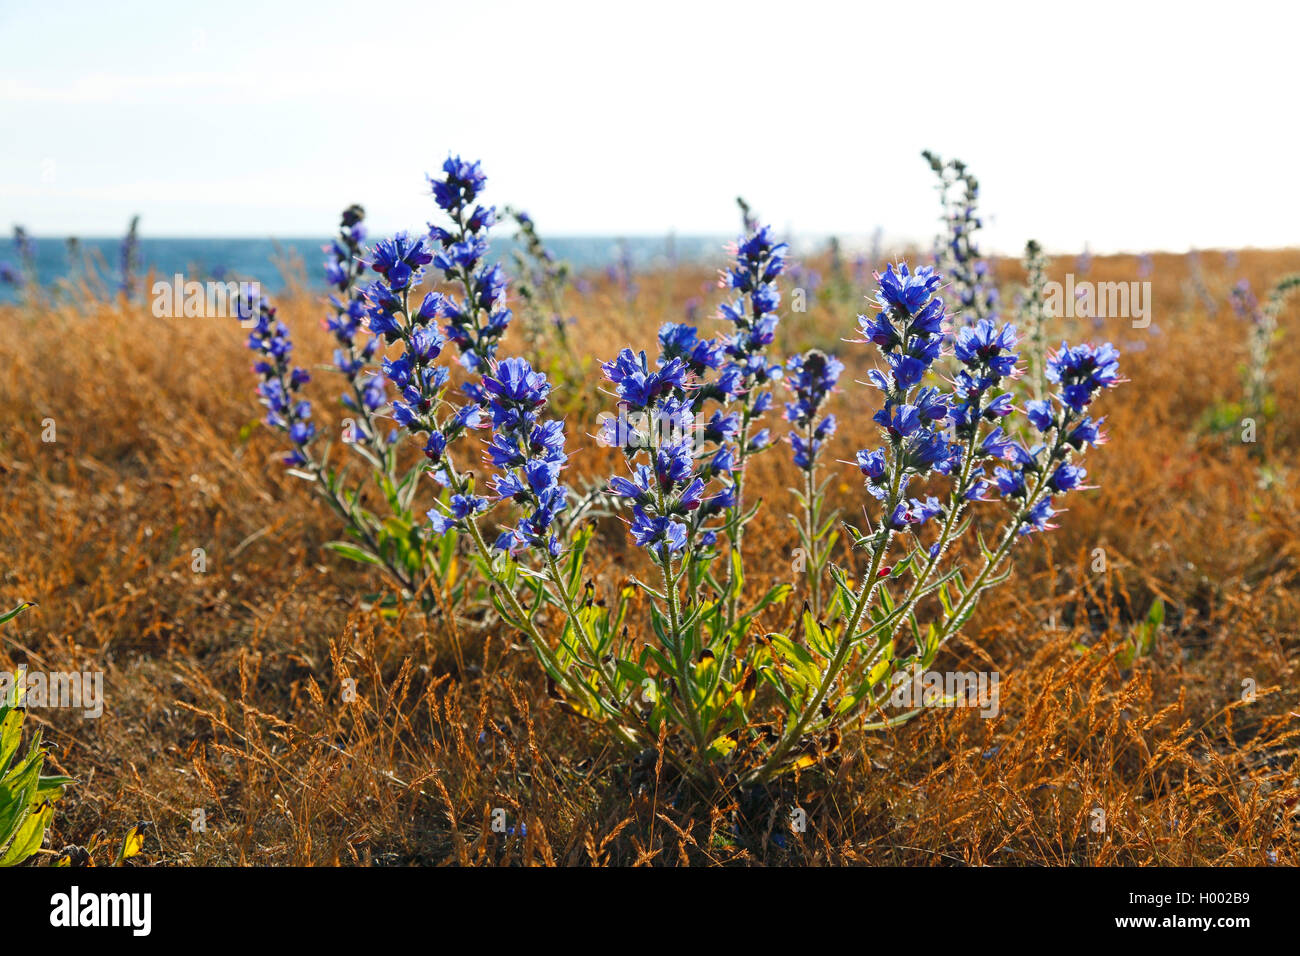 blueweed, blue devil, viper's bugloss, common viper's-bugloss (Echium vulgare), plants in backlight, Sweden, Oeland, Degerhamn Stock Photo